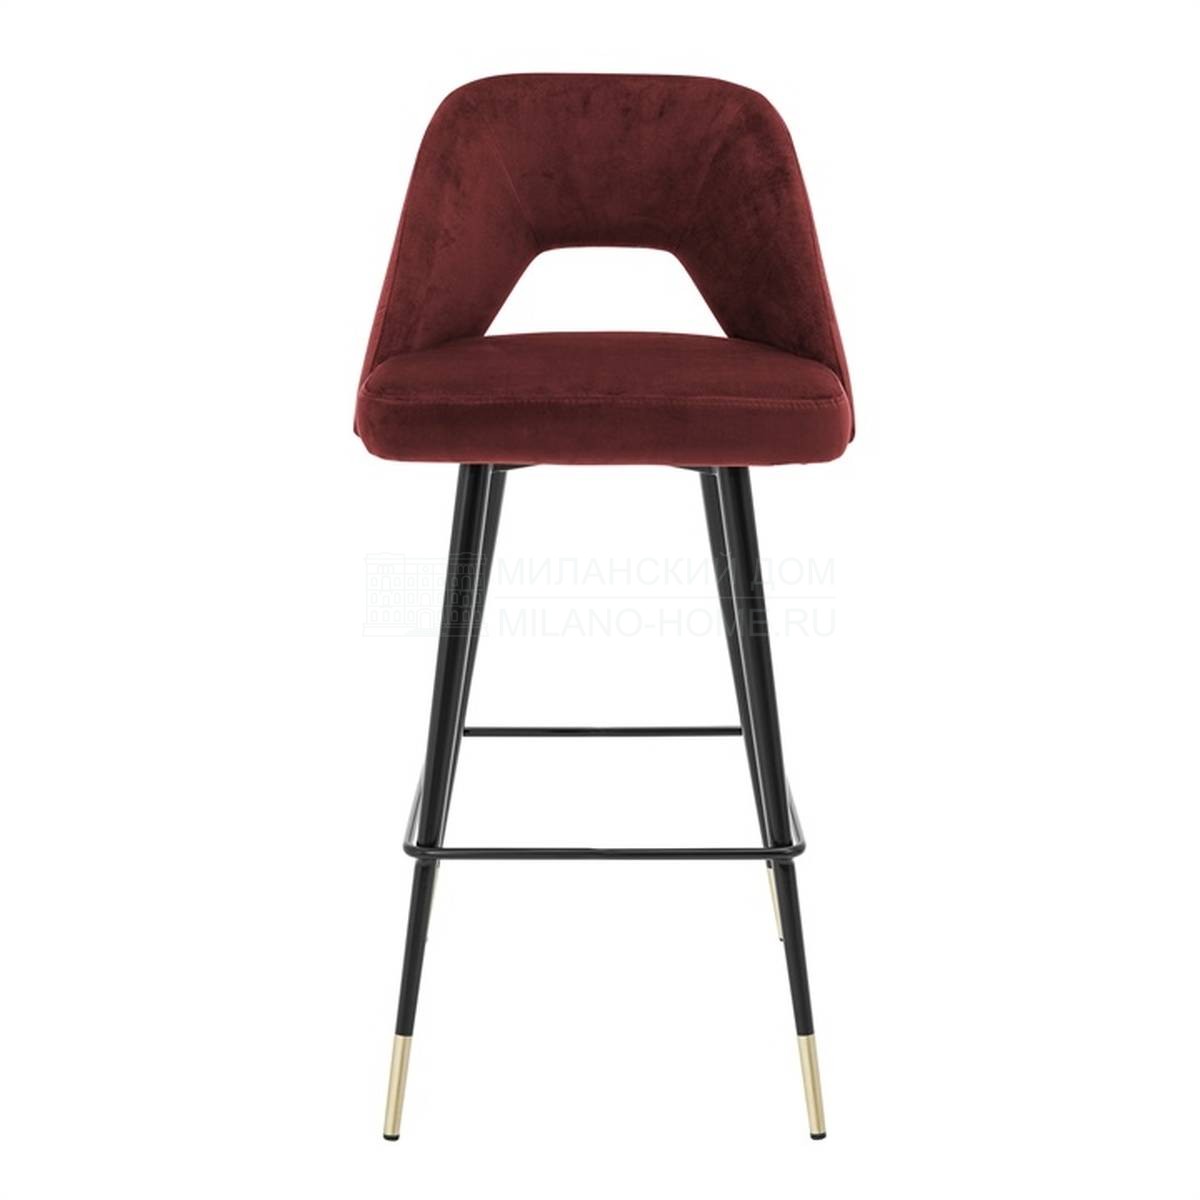 Барный стул Avorio bar stool из Великобритании фабрики THE SOFA & CHAIR Company